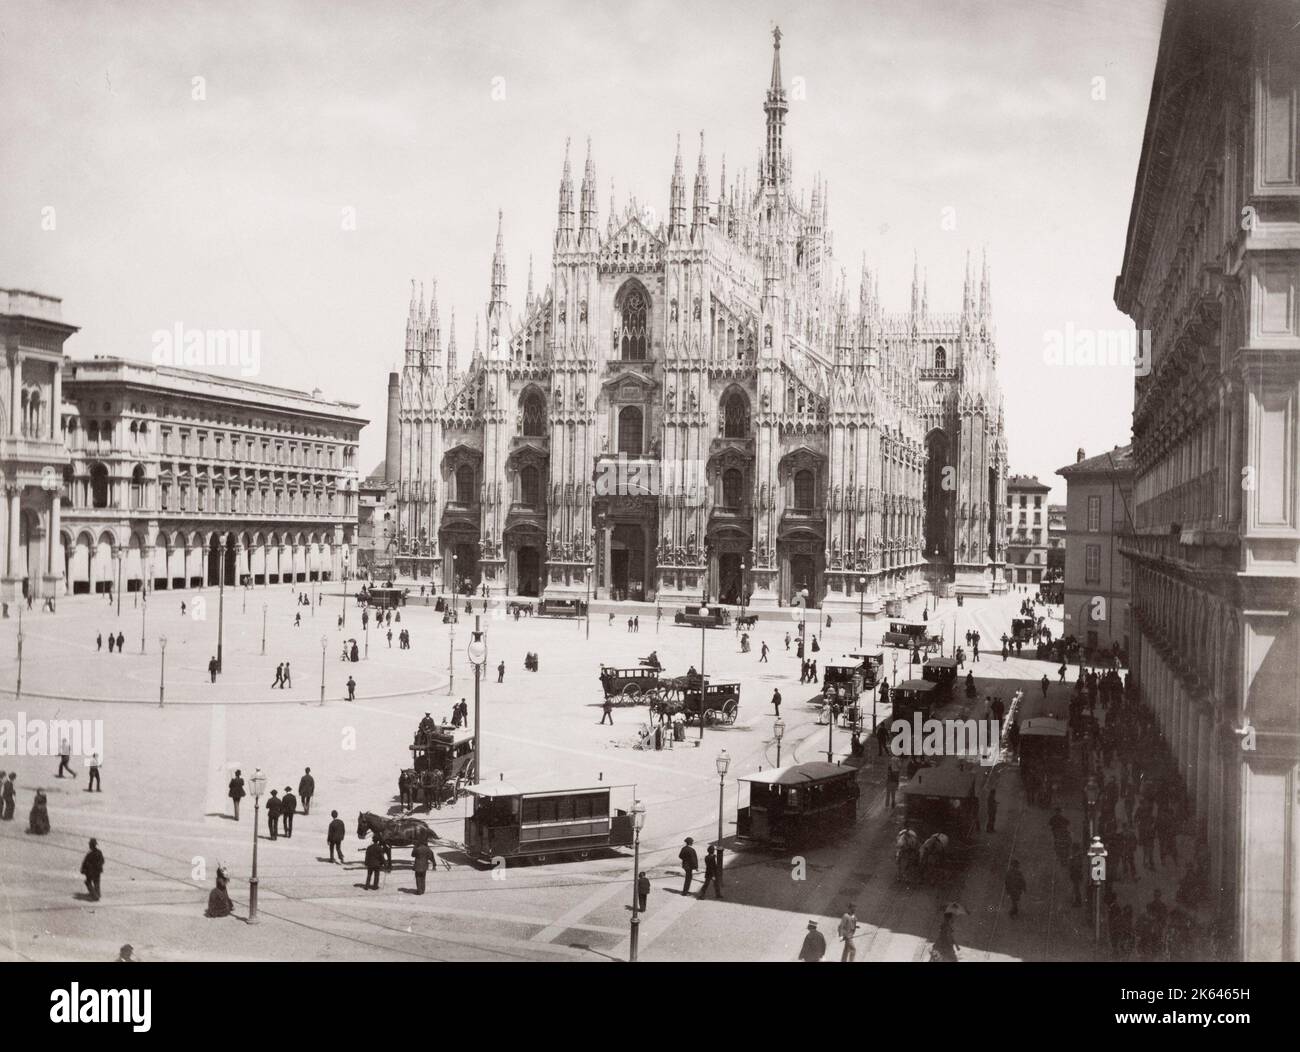 Photographie du XIXe siècle : duomo, cathédrale, Milan, béliers tirés par des chevaux. Banque D'Images